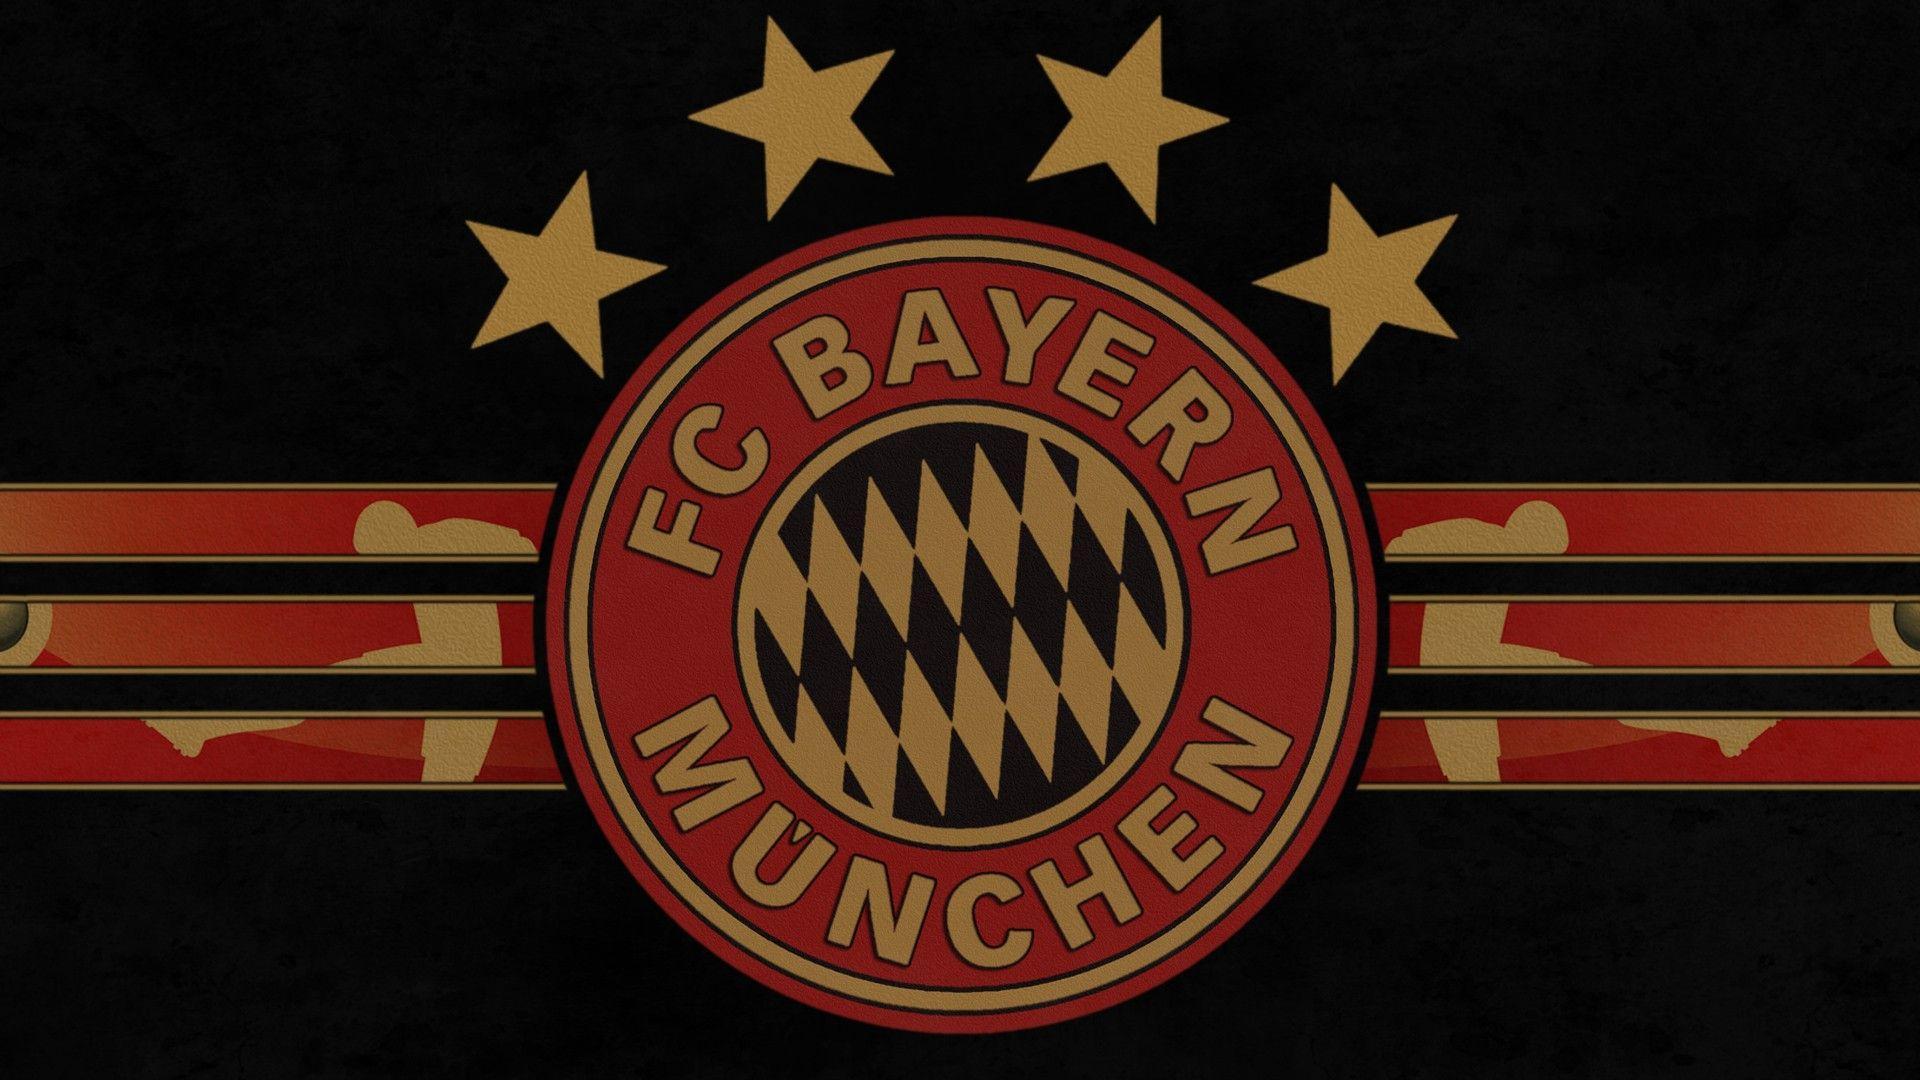 Bayern Munich FC German Sports Club Background